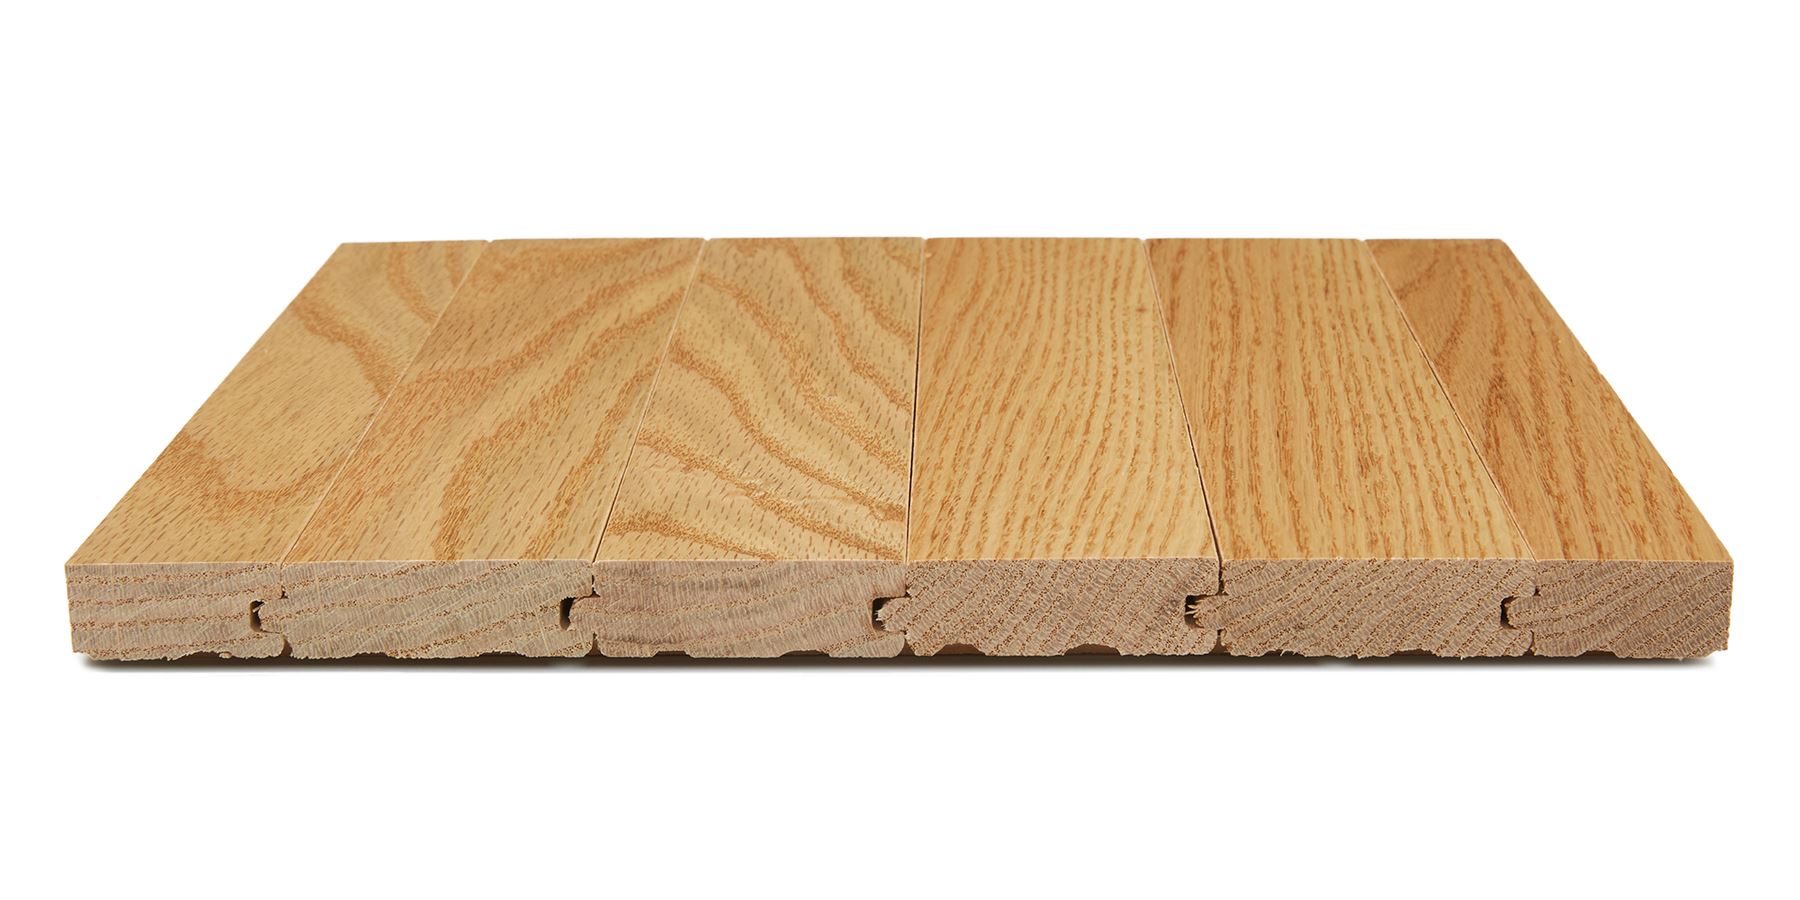 Providence Solid Hardwood Flooring